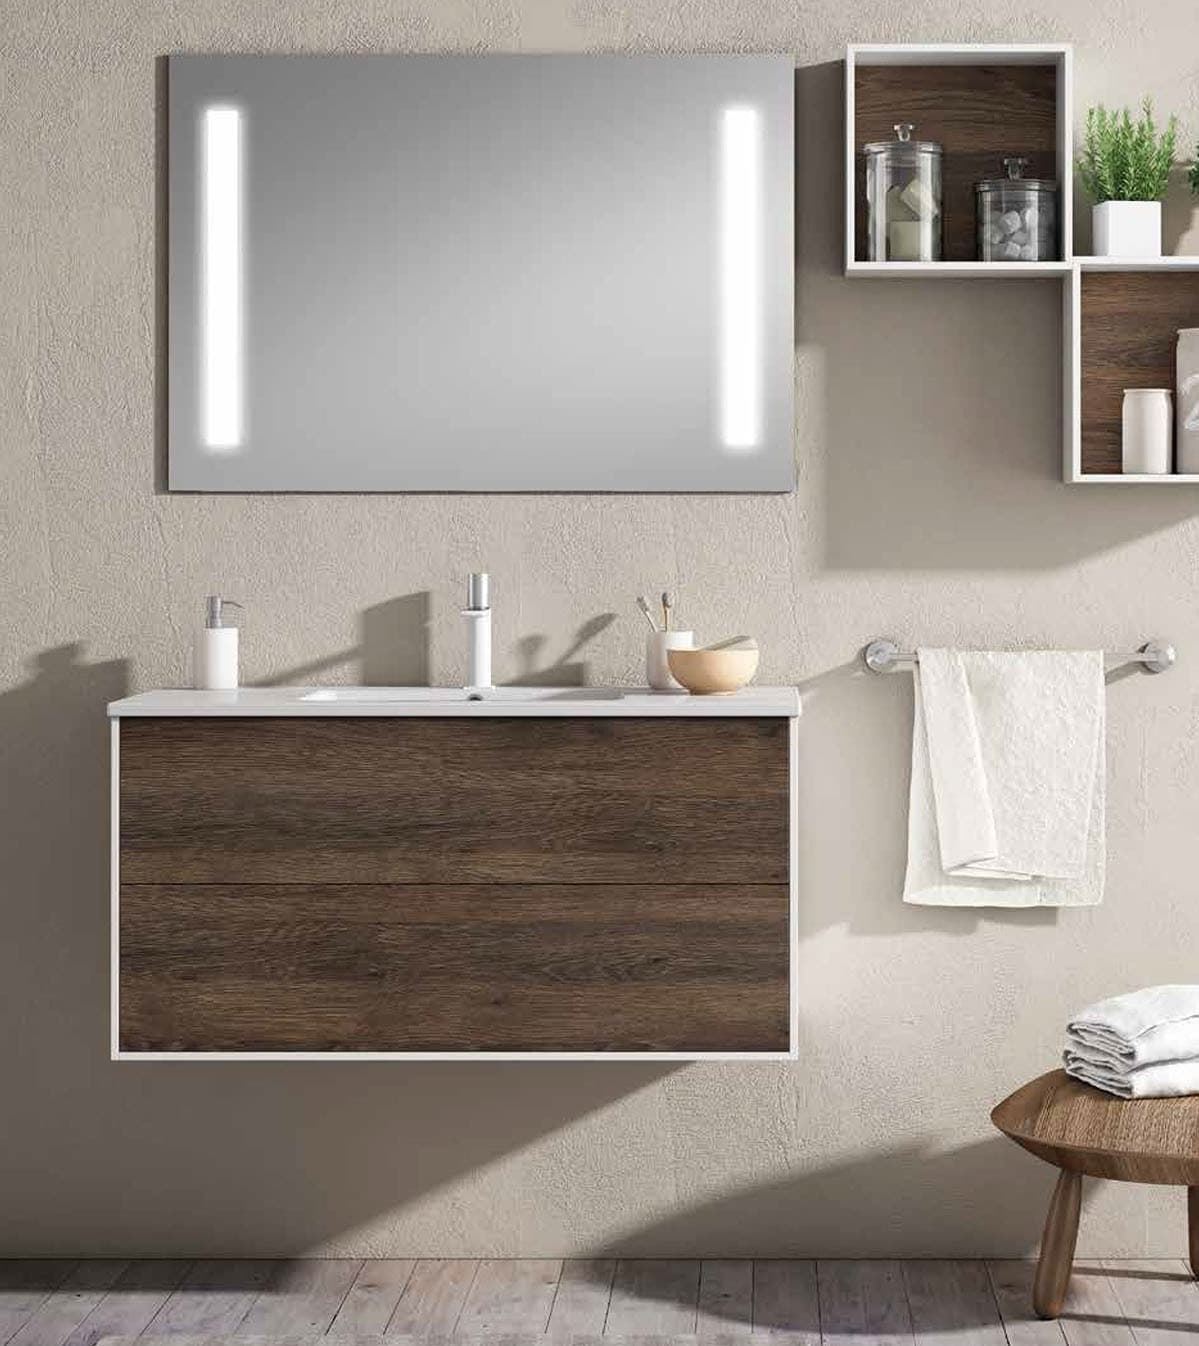 Cómo elegir el espejo para el cuarto de baño y acertar - Foto 1